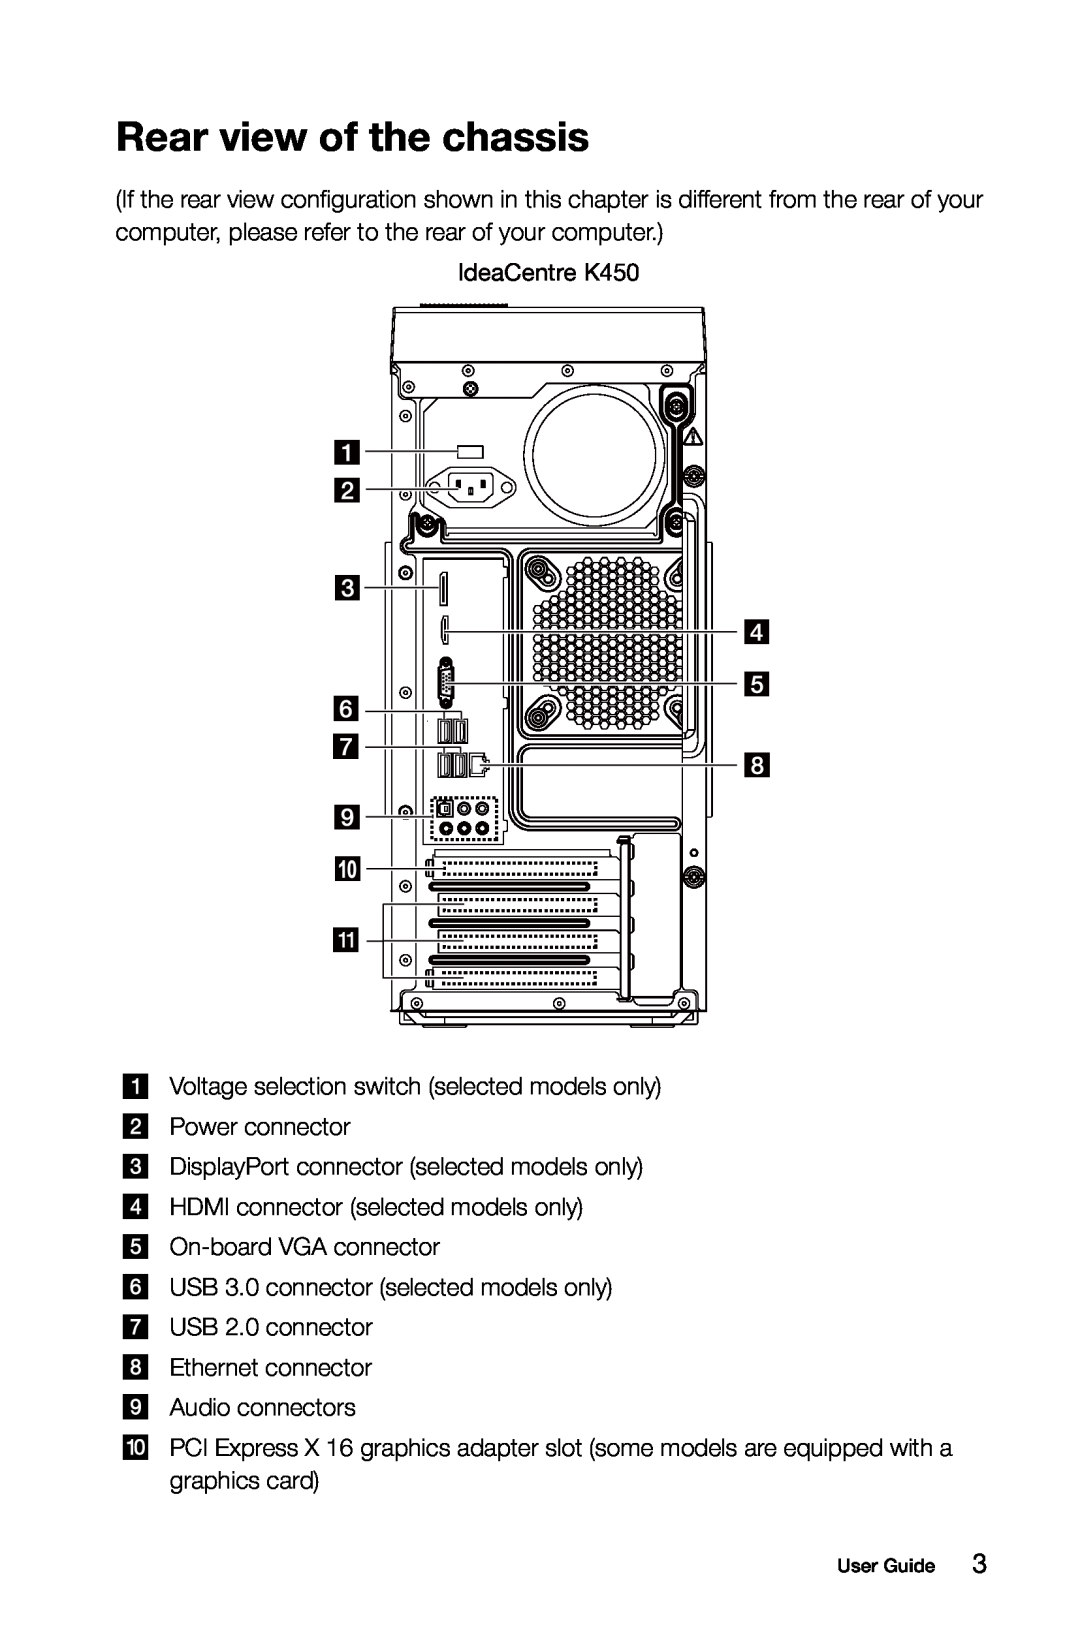 Lenovo 10089/1168/4744 [K410], 10121/90A1 [K450 ES], 10120/90A0 [K450 NON-ES] Rear view of the chassis, IdeaCentre K450 